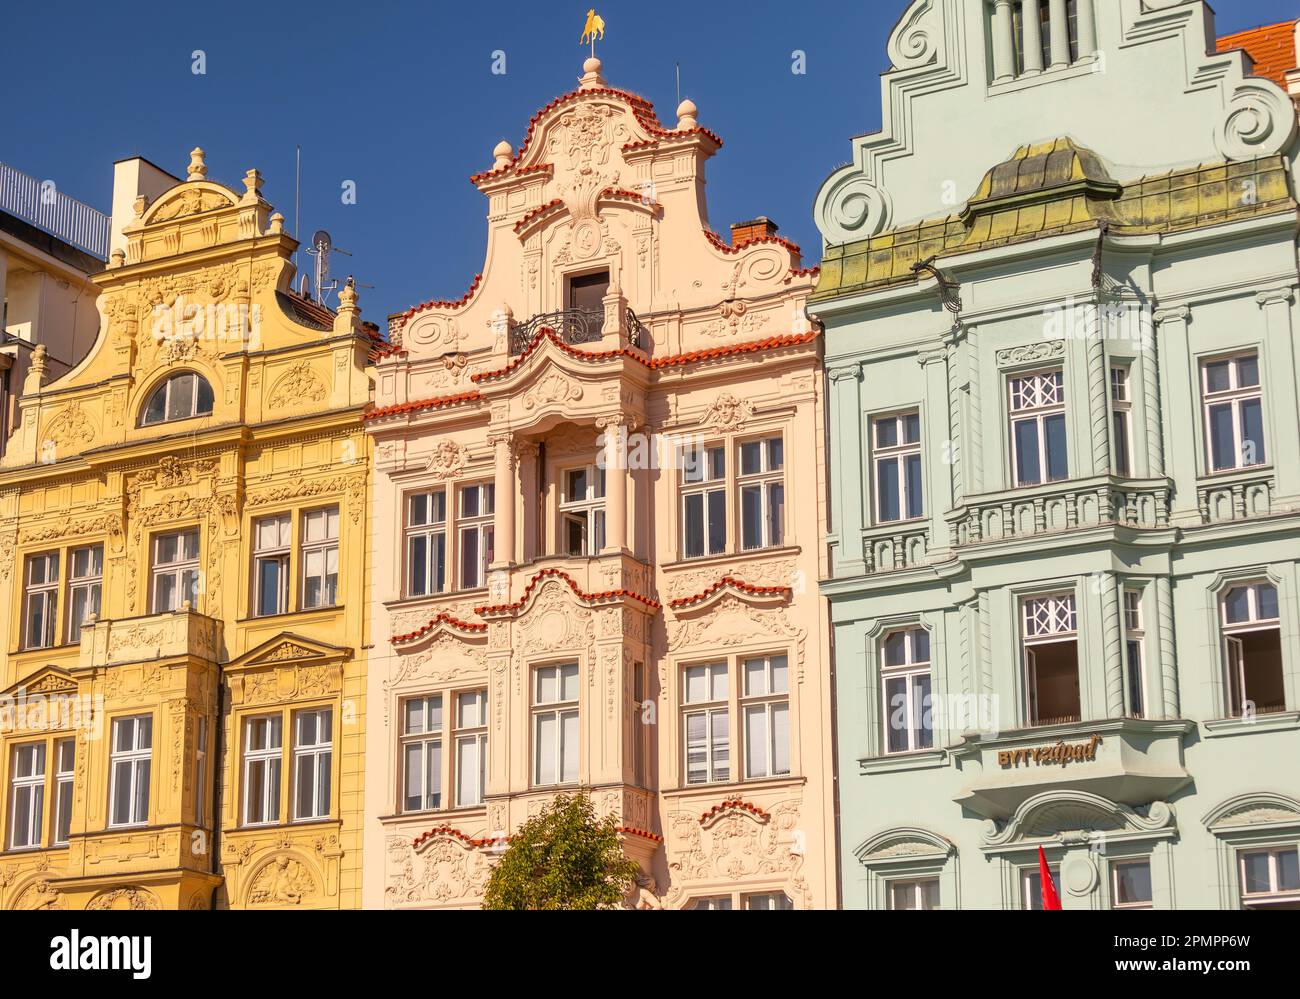 PILSEN, RÉPUBLIQUE TCHÈQUE, EUROPE - façades de bâtiments colorées de la place principale de Pilsen. Banque D'Images